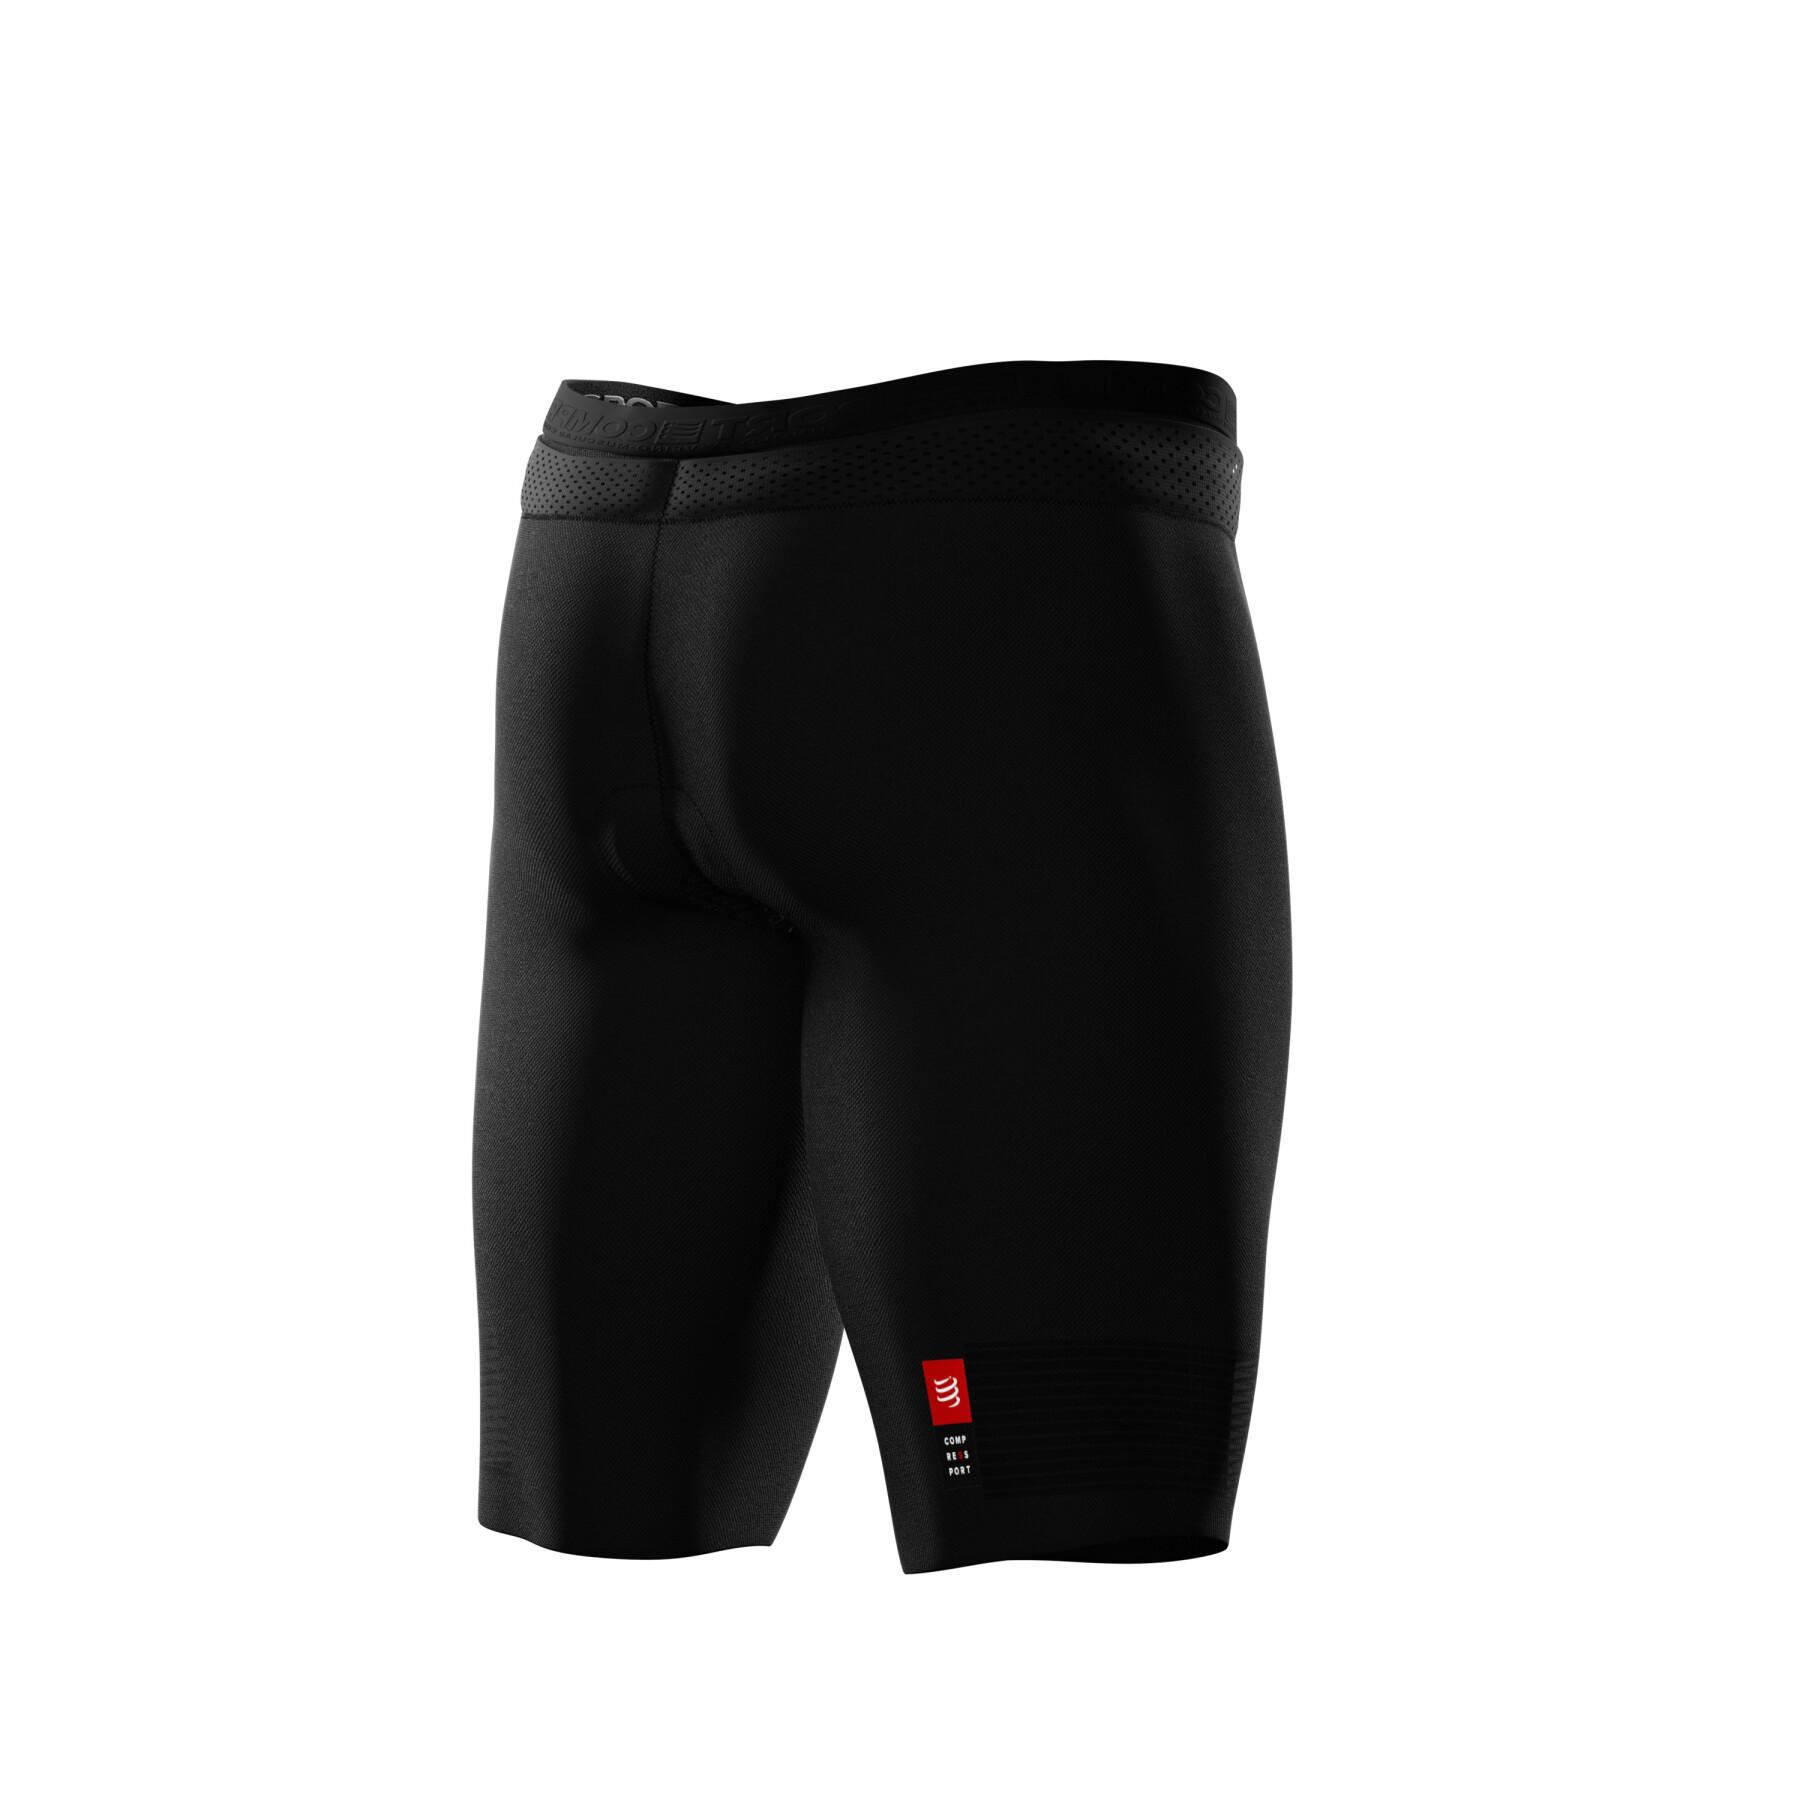 Pantalones cortos de compresión Compressport Under Control Triathlon